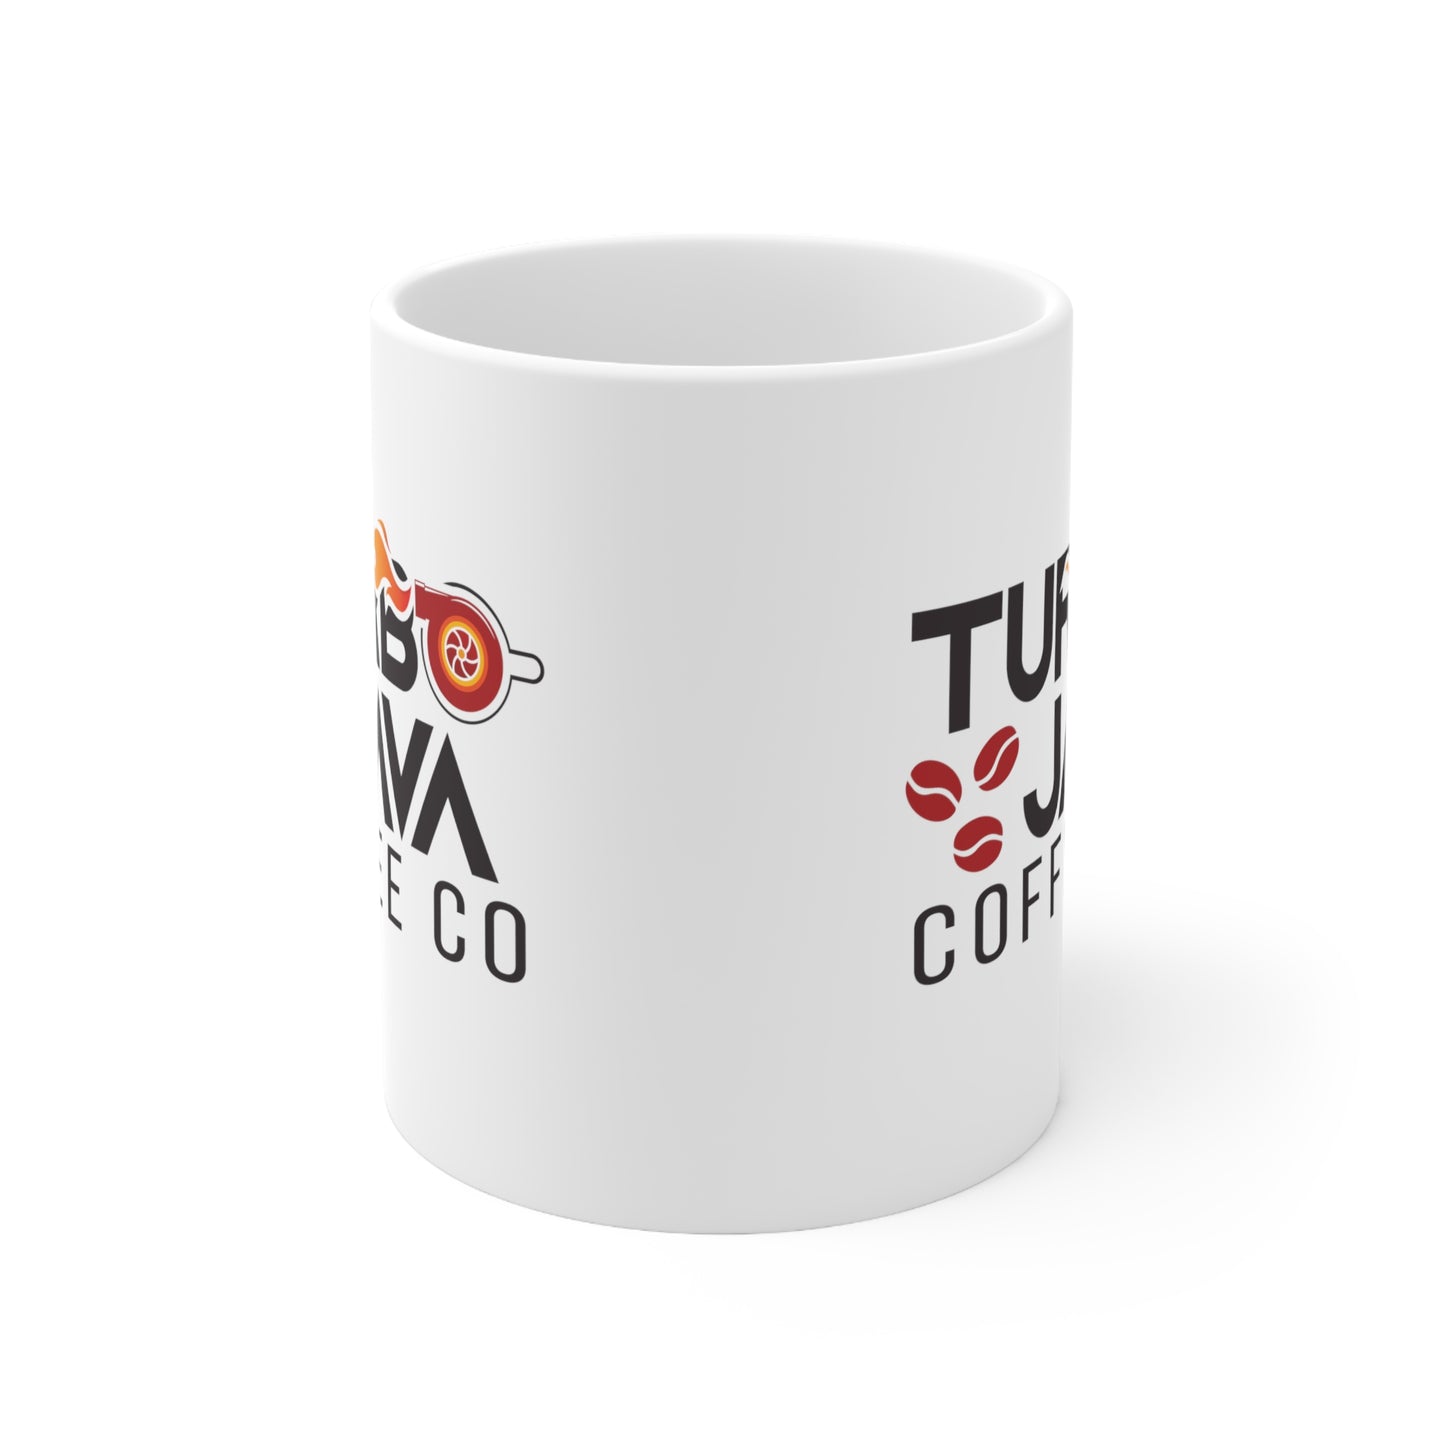 Turbo Java Ceramic Mug - 11 oz. (White)